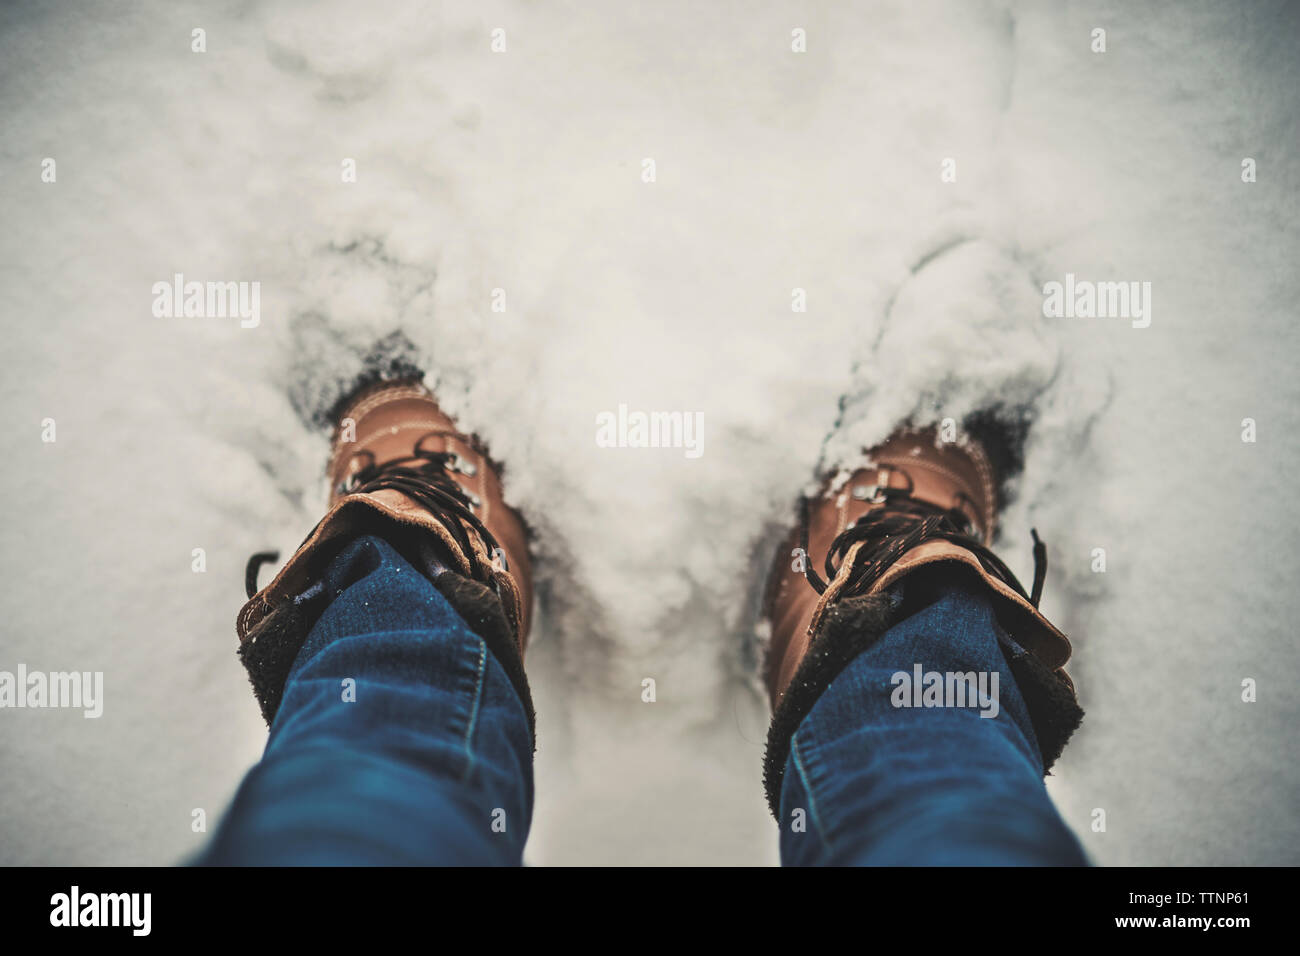 La section basse de l'homme debout sur le terrain couvert de neige Banque D'Images